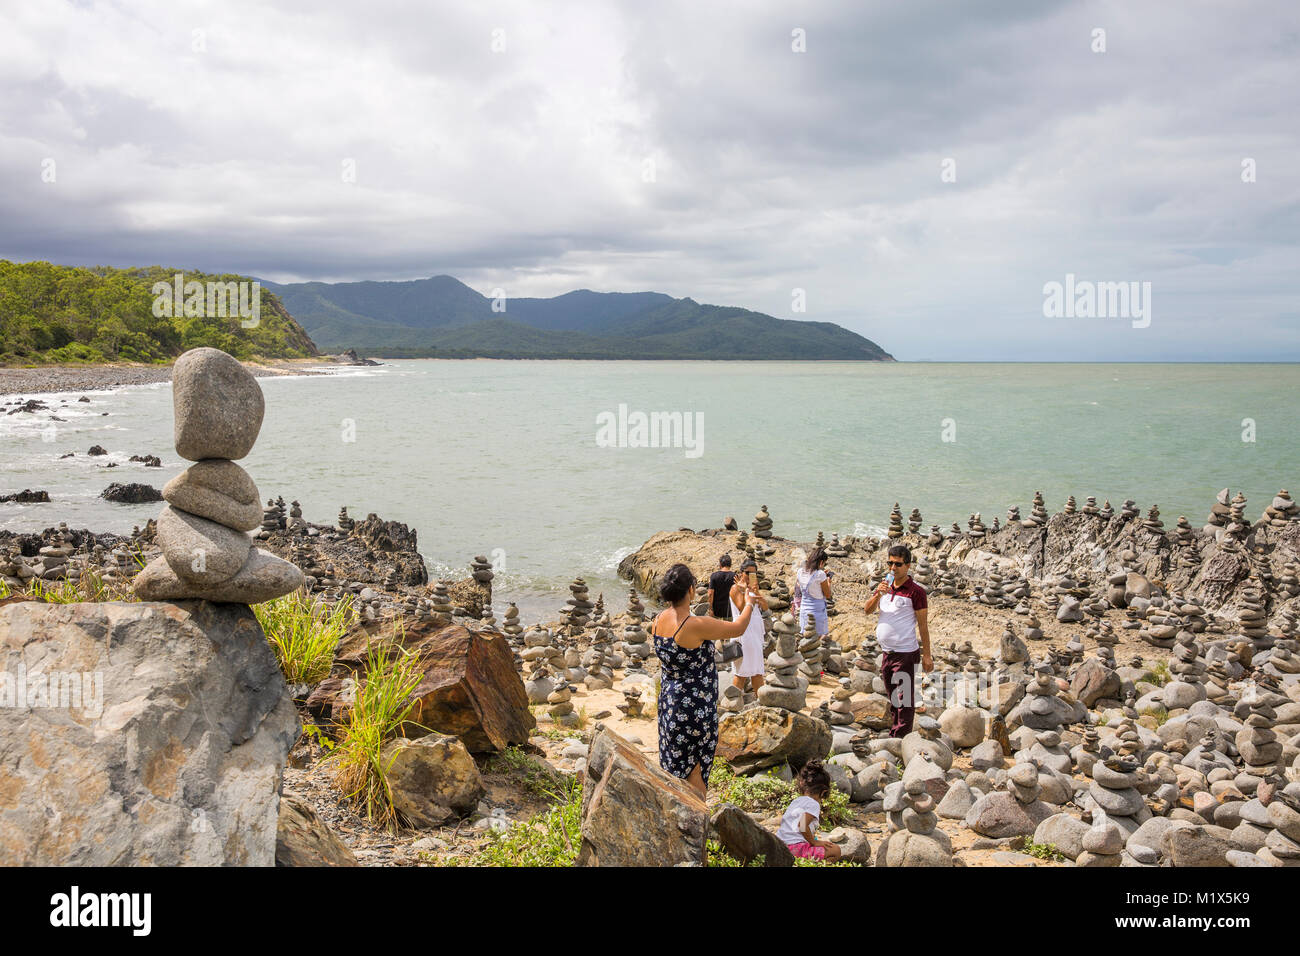 Des pierres empilées en une formation sur une plage entre Cairns et Port Douglas à l'extrême nord du Queensland, Australie Banque D'Images